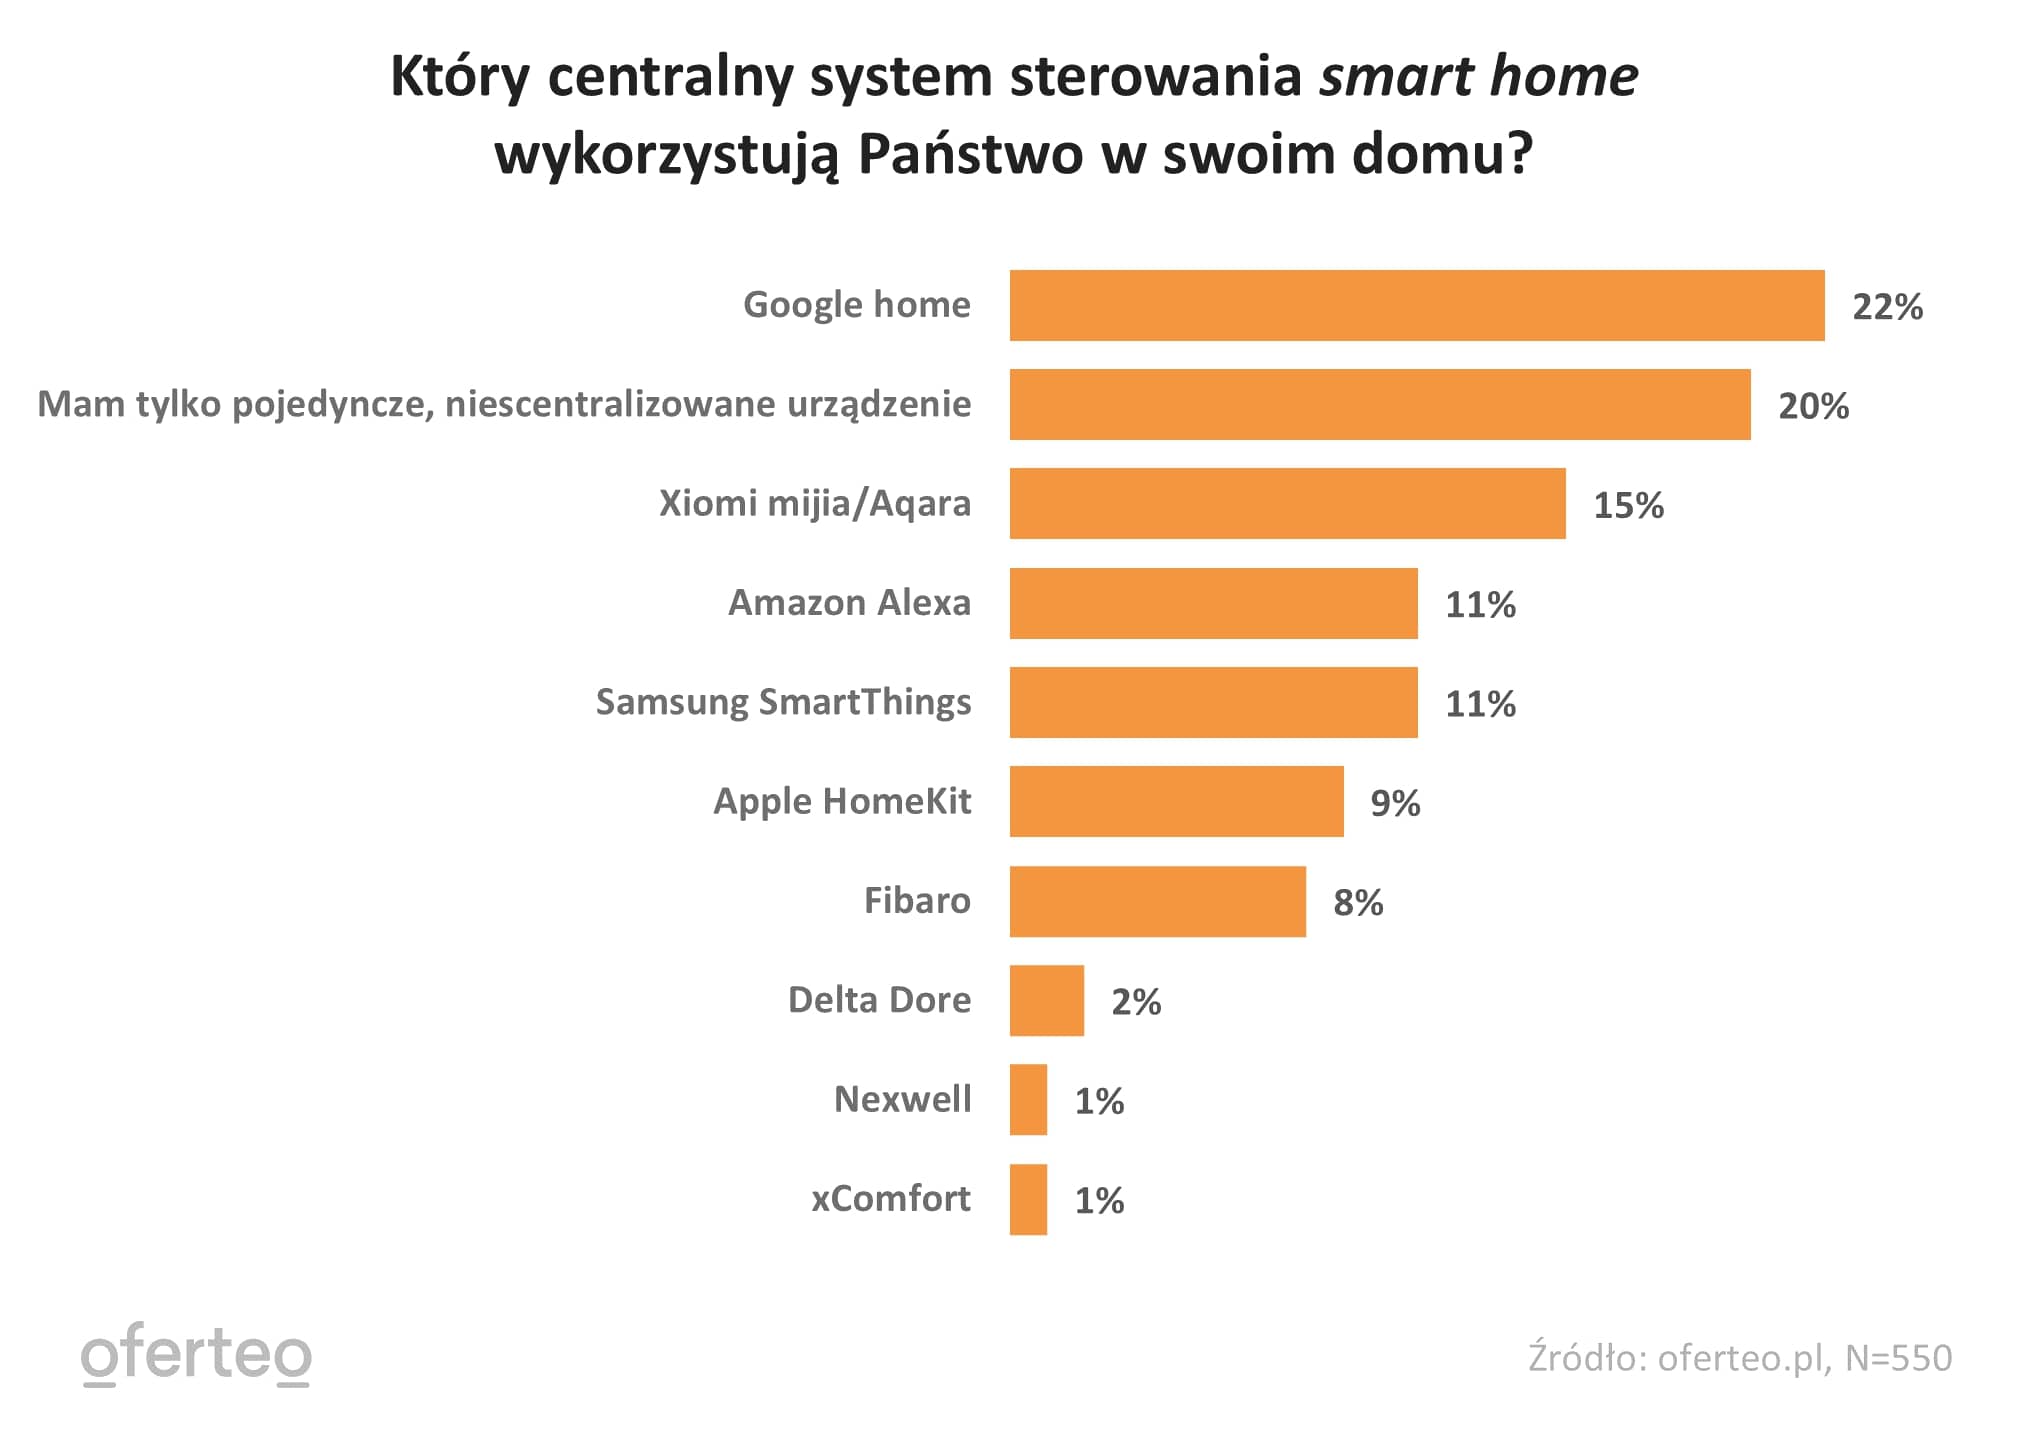 Wykres przedstawiający rodzaje centralnego systemu sterowania smart home